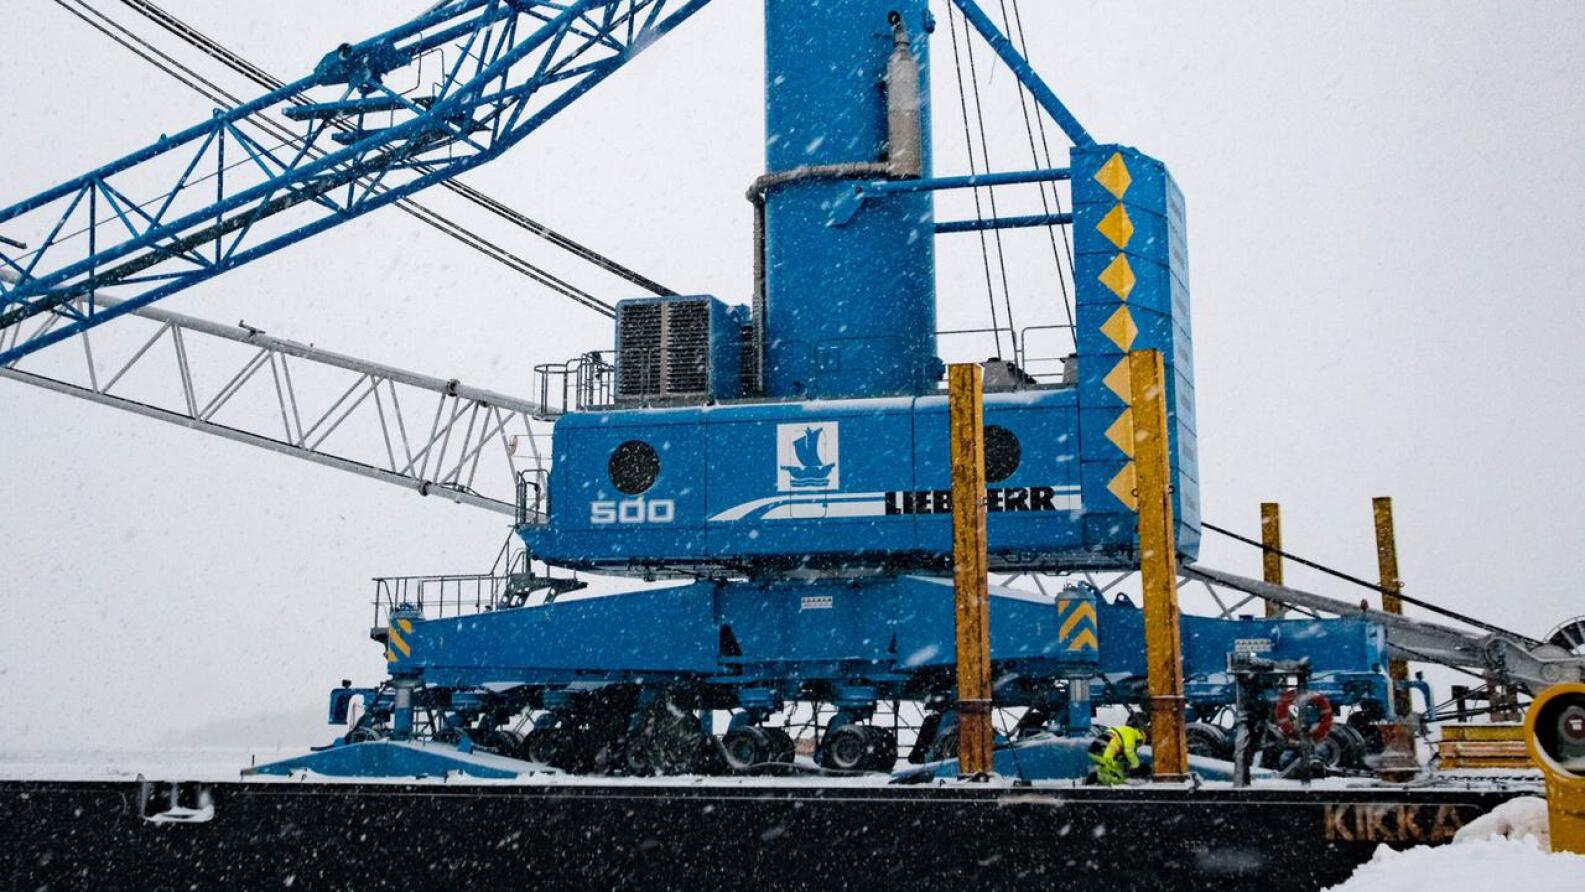 Nyt satamaan saapunut Liebherr LHM 500 satamanosturi pystyy nostamaan 140 tonnin kuorman ja tekee Pietarsaaren satamasta entistä kilpailukykyisemmän